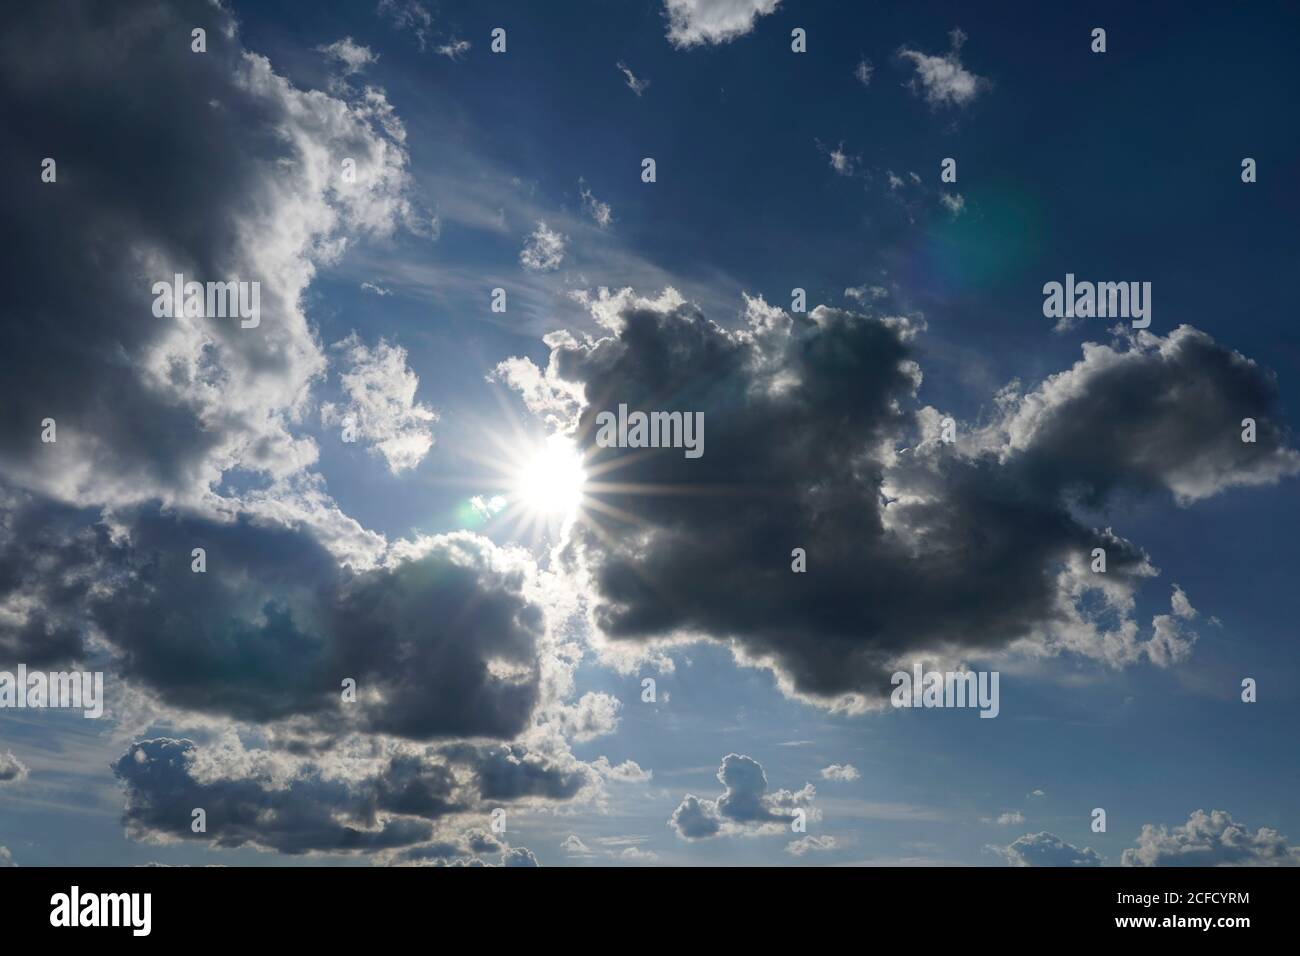 Deutschland, Bayern, Oberbayern, Altötting, Wolkenbildung, Sonne hinter dunklen Regenwolken, Nimbostratus Stockfoto